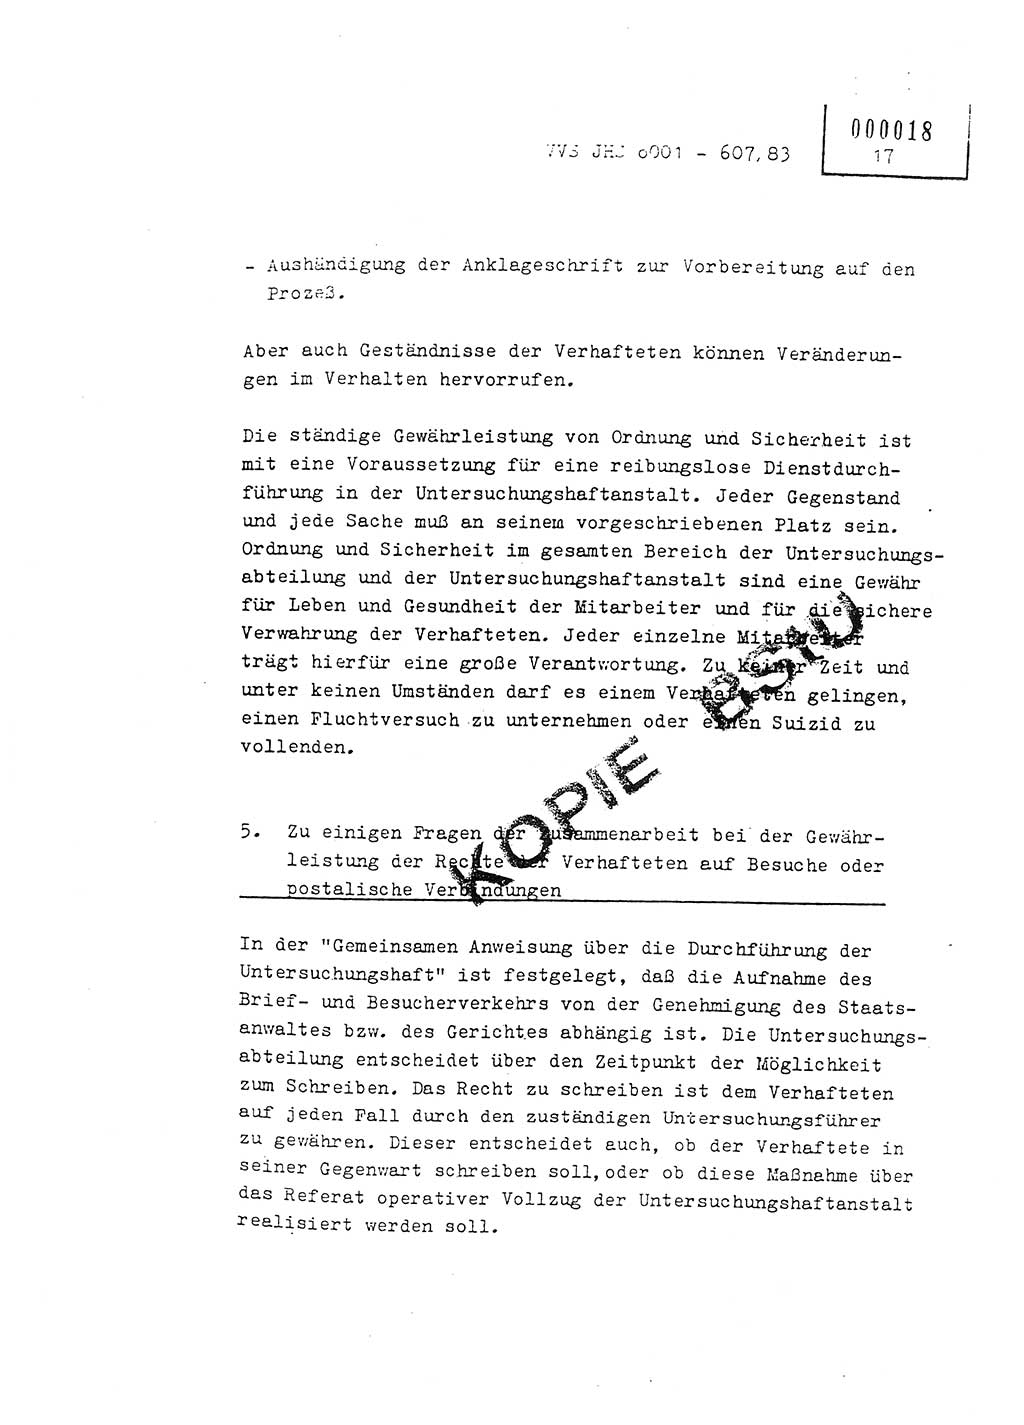 Fachschulabschlußarbeit Oberleutnant Hans-Joachim Saltmann (BV Rostock Abt. ⅩⅣ), Ministerium für Staatssicherheit (MfS) [Deutsche Demokratische Republik (DDR)], Juristische Hochschule (JHS), Vertrauliche Verschlußsache (VVS) o001-607/83, Potsdam 1983, Seite 17 (FS-Abschl.-Arb. MfS DDR JHS VVS o001-607/83 1983, S. 17)